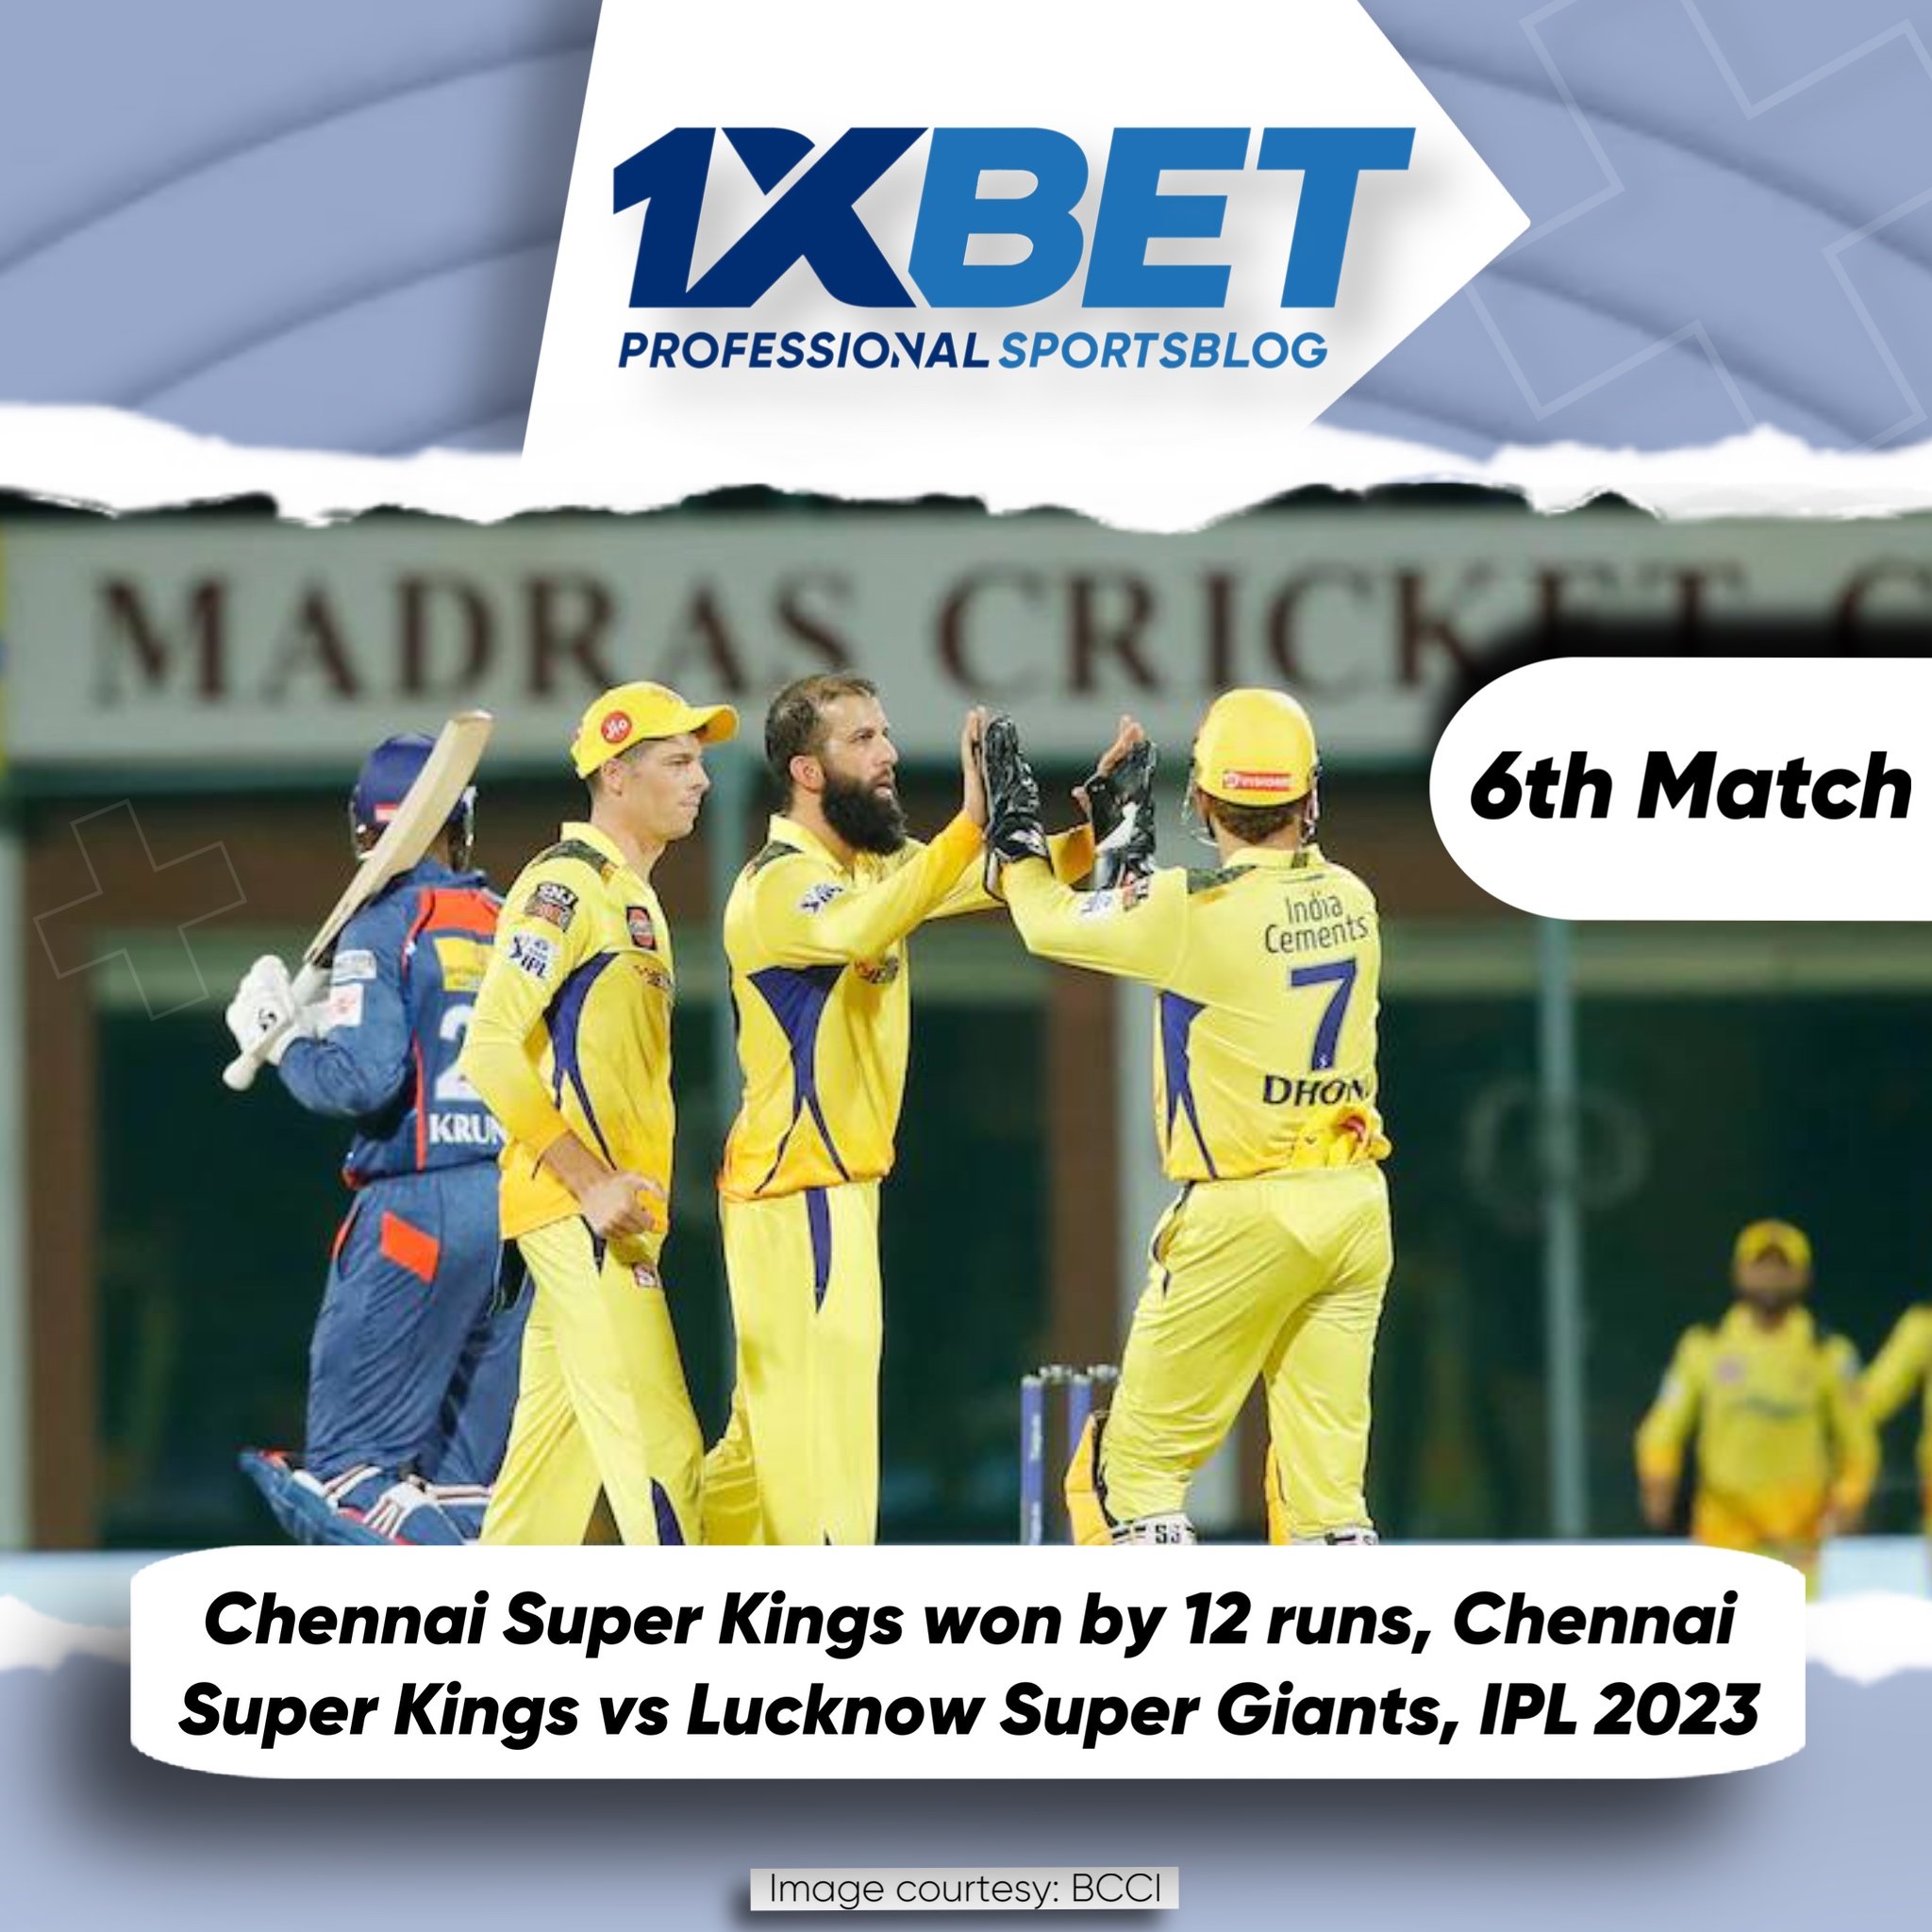 Chennai Super Kings won by 12 runs